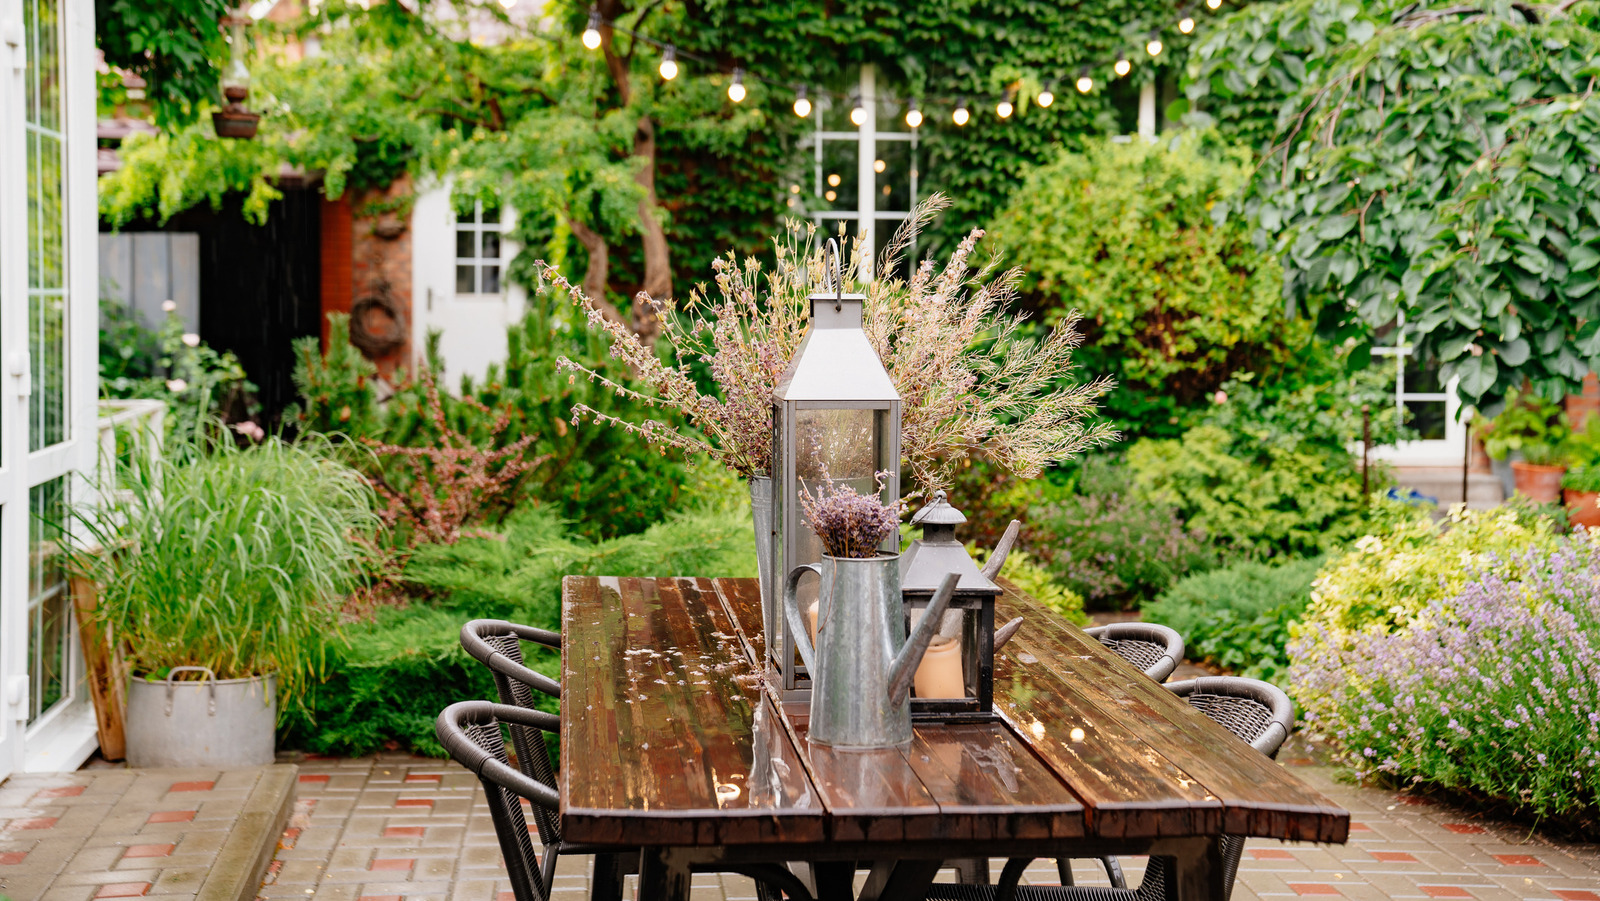 34 Creative Small Garden Ideas - Indoor and Outdoor Garden Designs for  Small Spaces